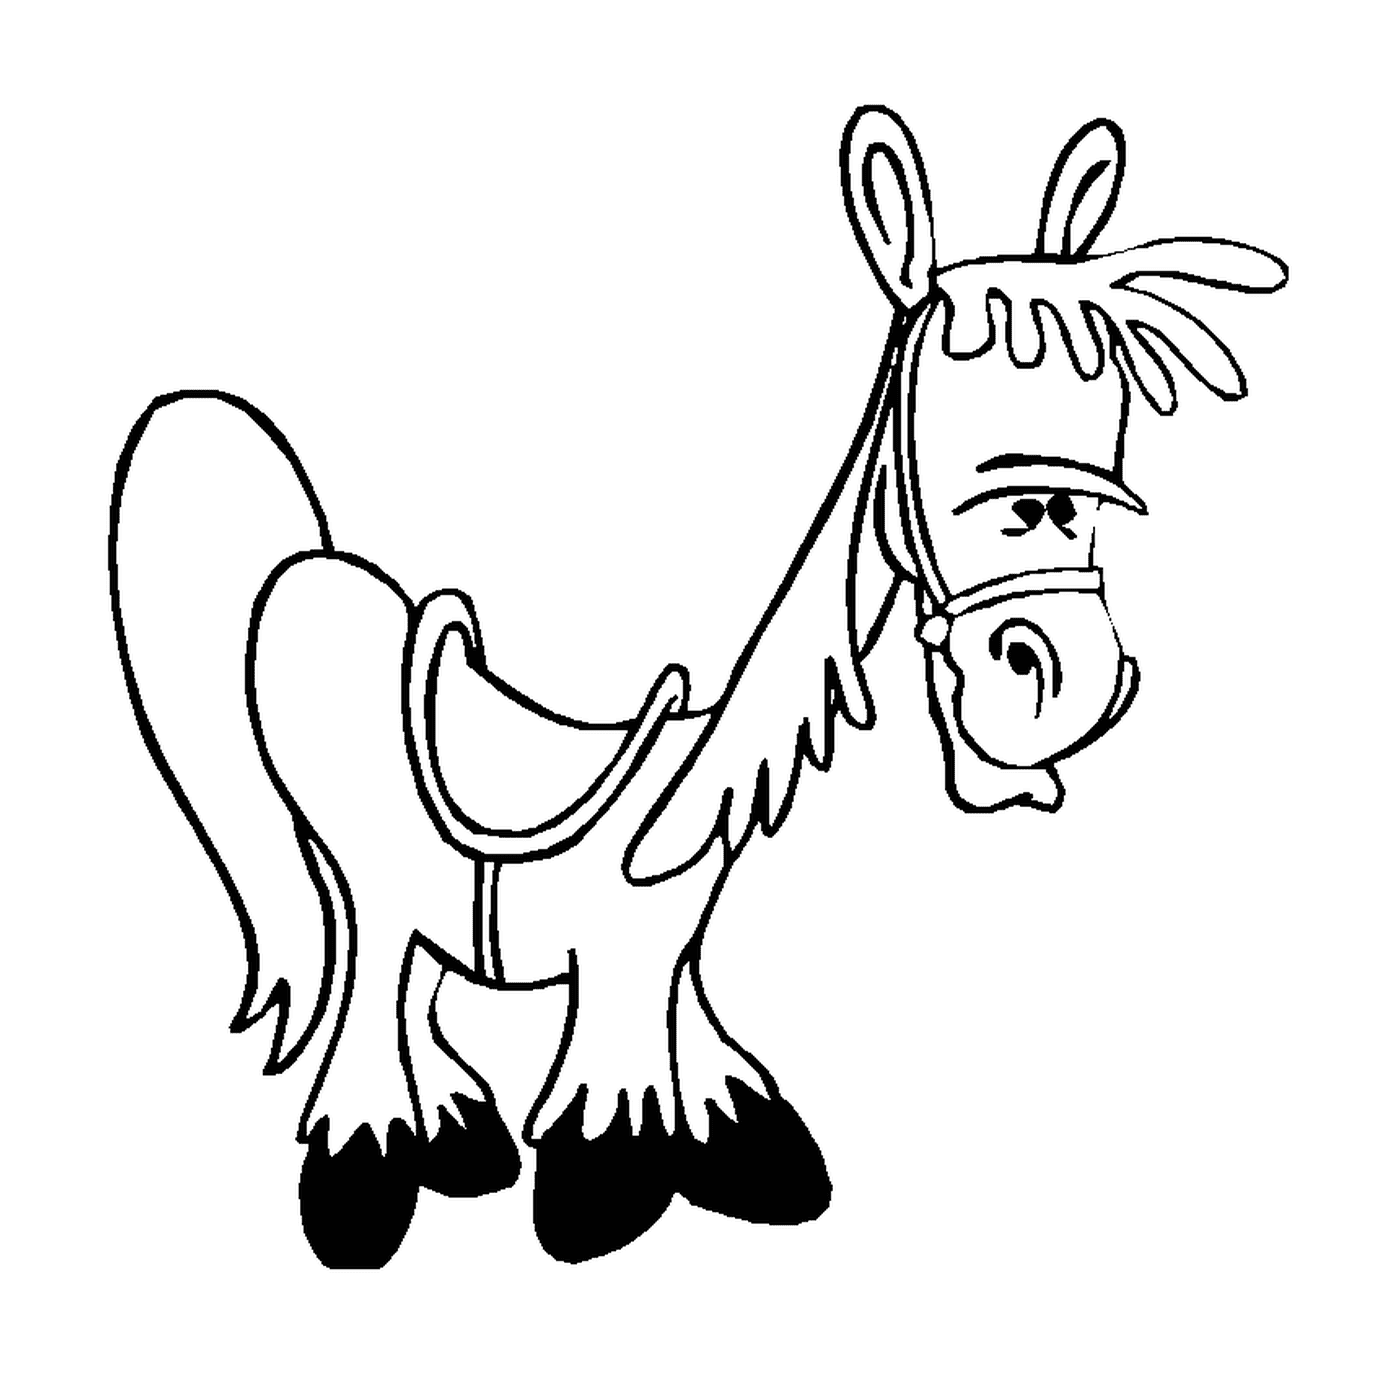  Divertente illustrazione di un cavallo con un'imbracatura 